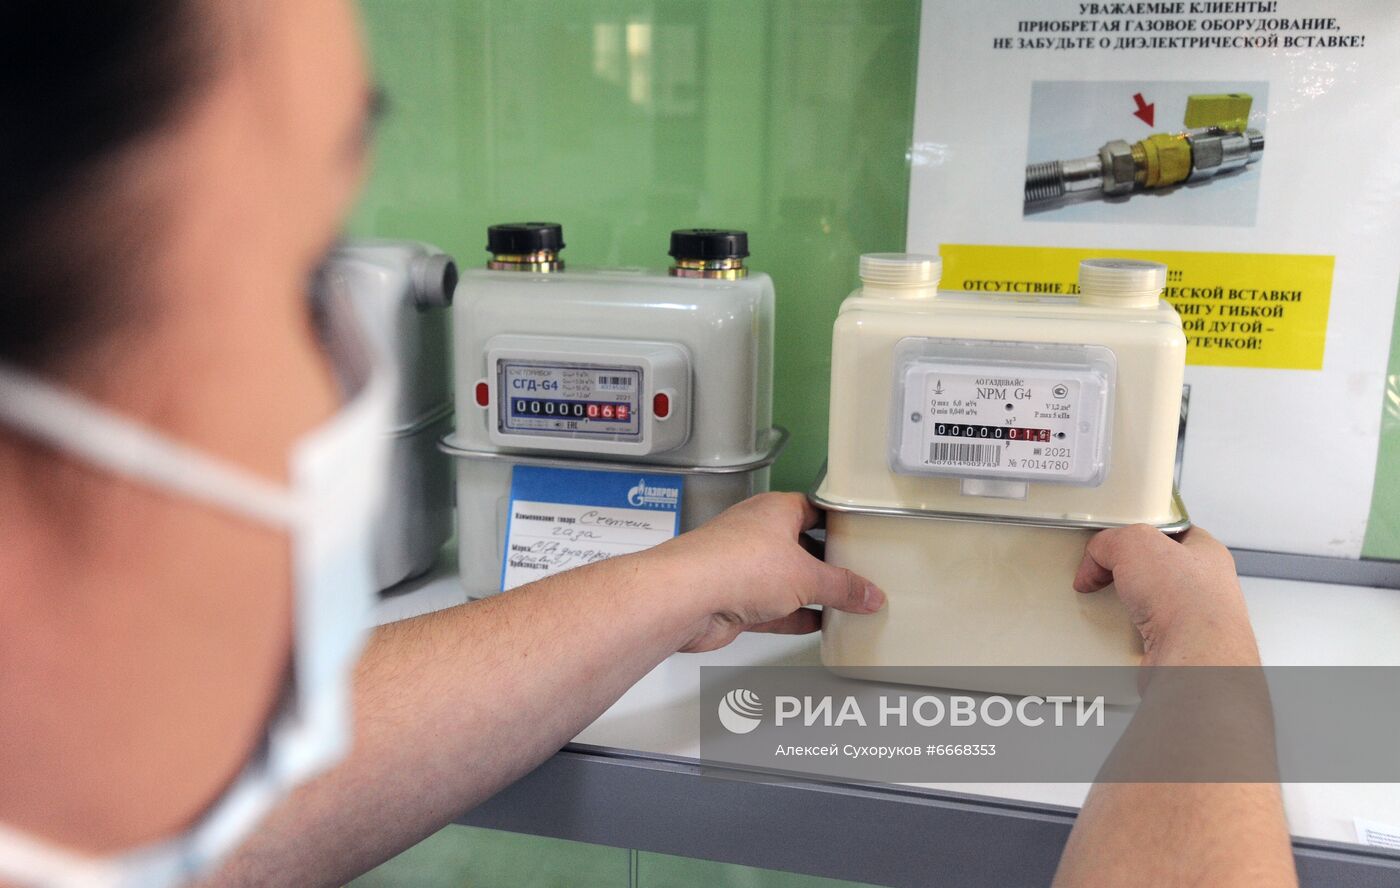 Работа сотрудников компании АО "Газпром газораспределение" в Тамбове 